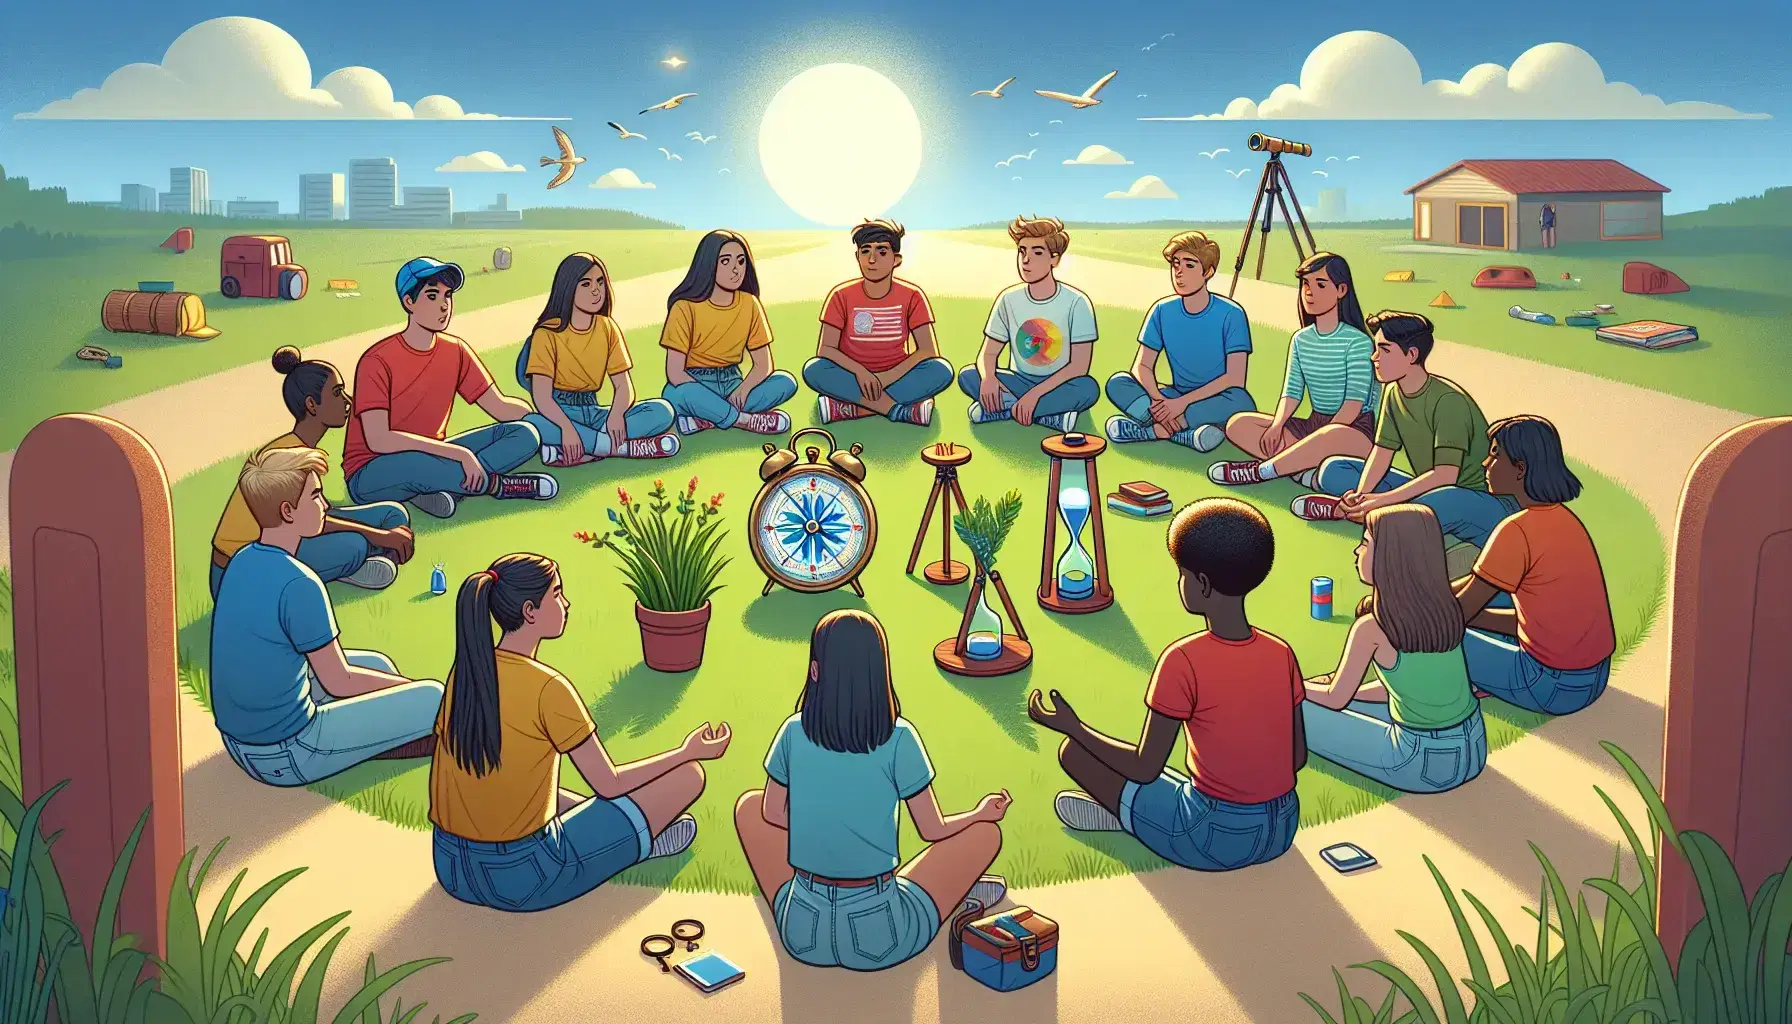 Grupo diverso de jóvenes sentados en círculo en el césped con brújula, reloj de arena, telescopio y planta, bajo cielo azul.